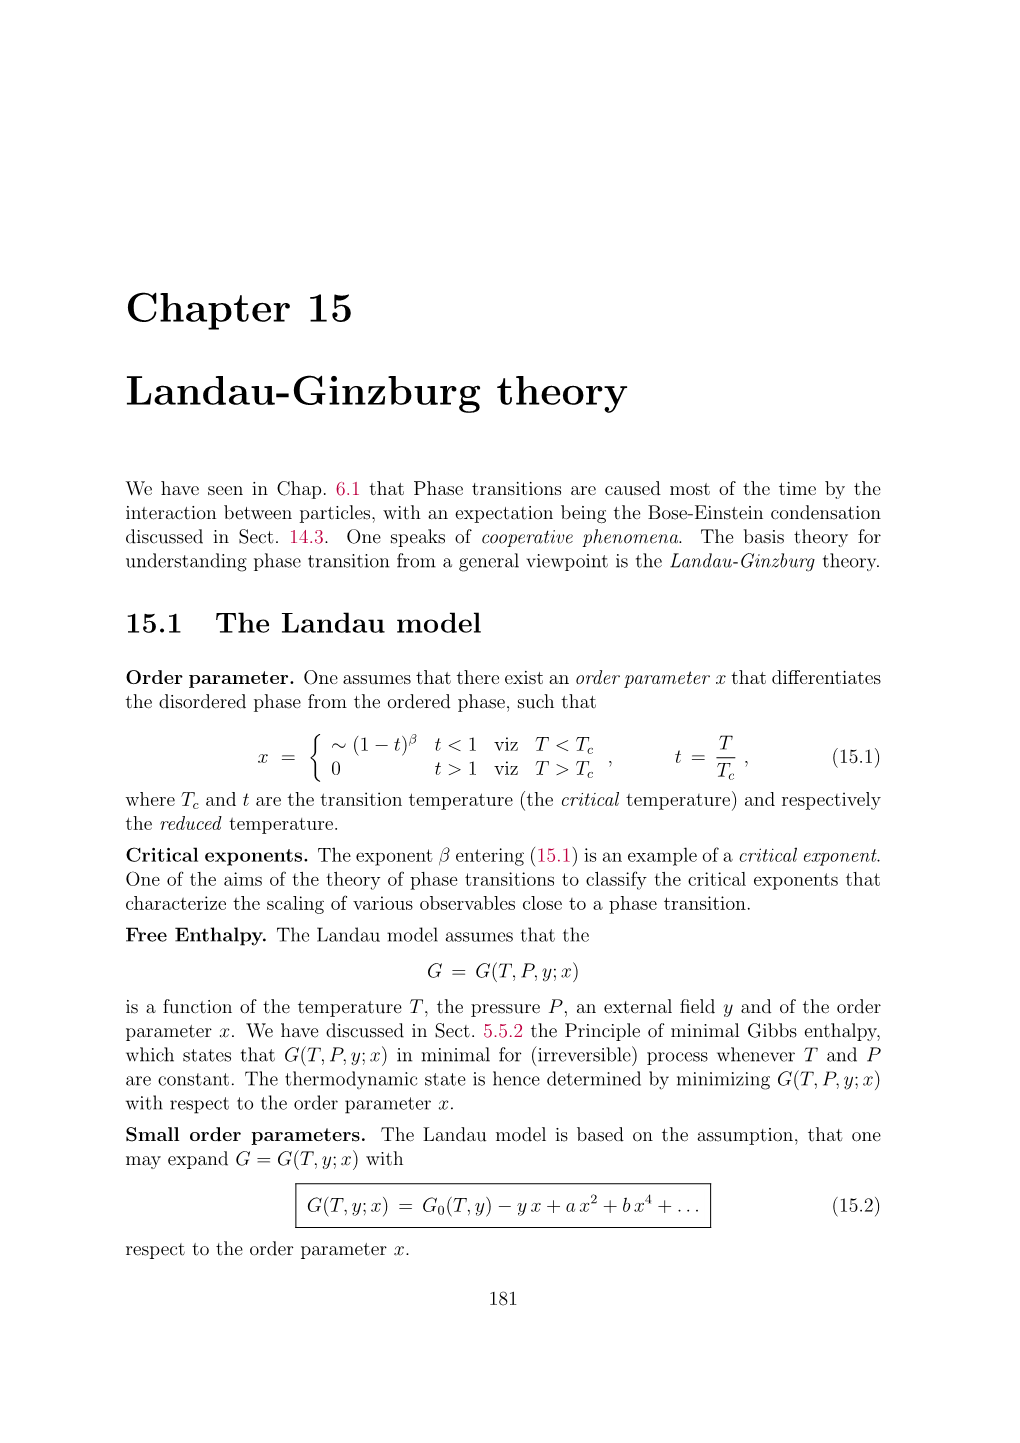 Chapter 15 Landau-Ginzburg Theory